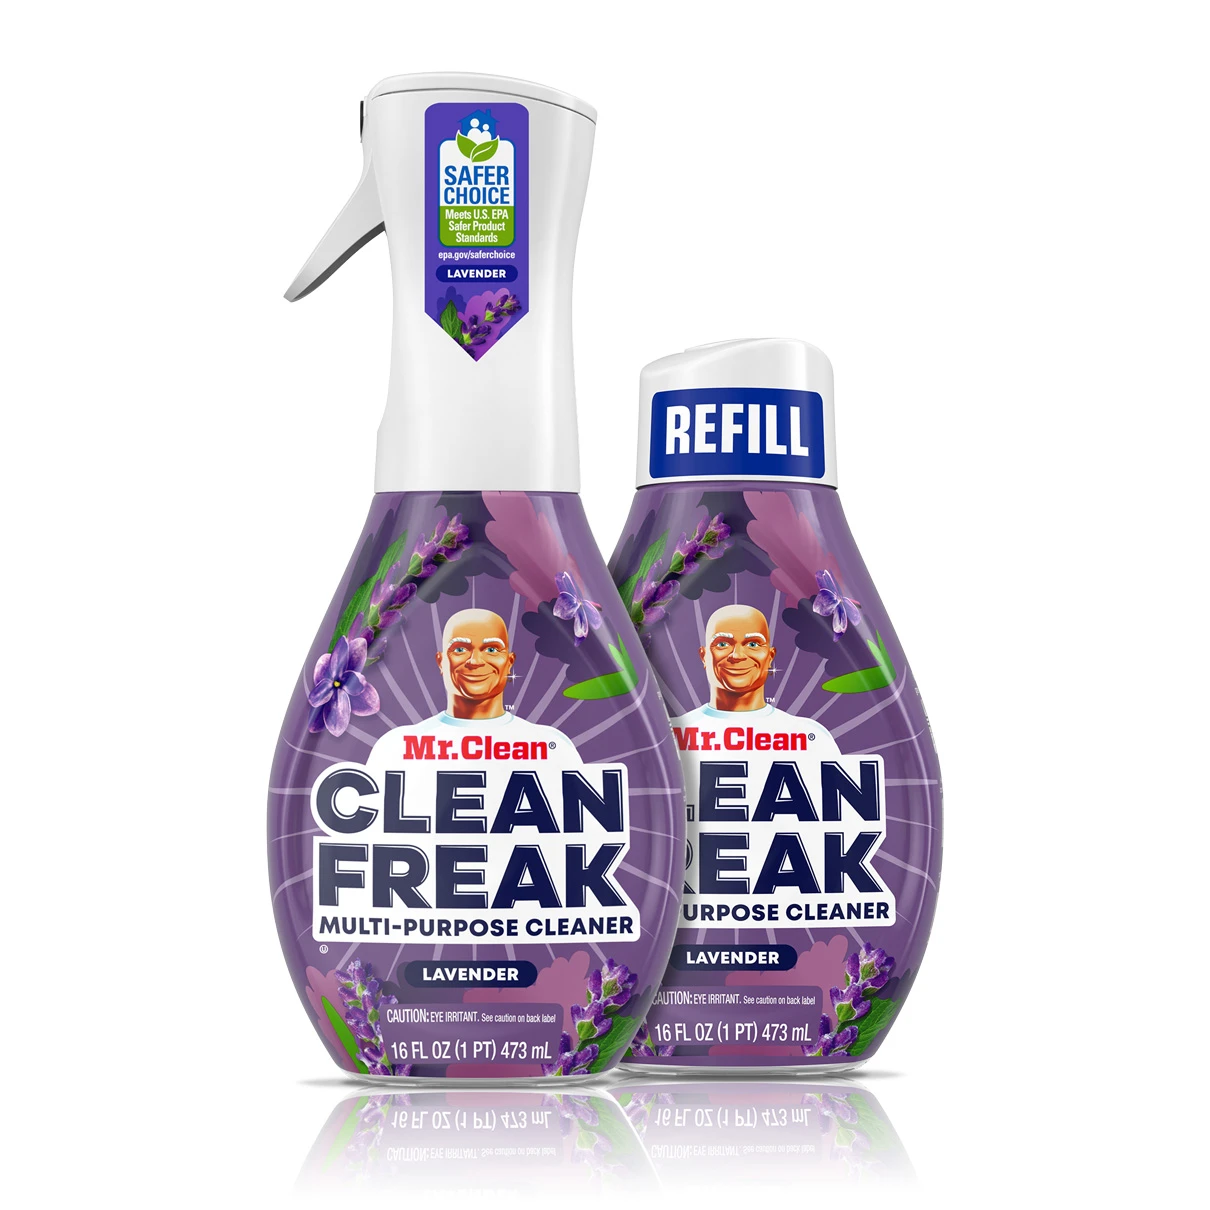 Mr Clean Clean Freak Cleaner, Deep Cleaning Mist, Wild Flower, Multi-Purpose